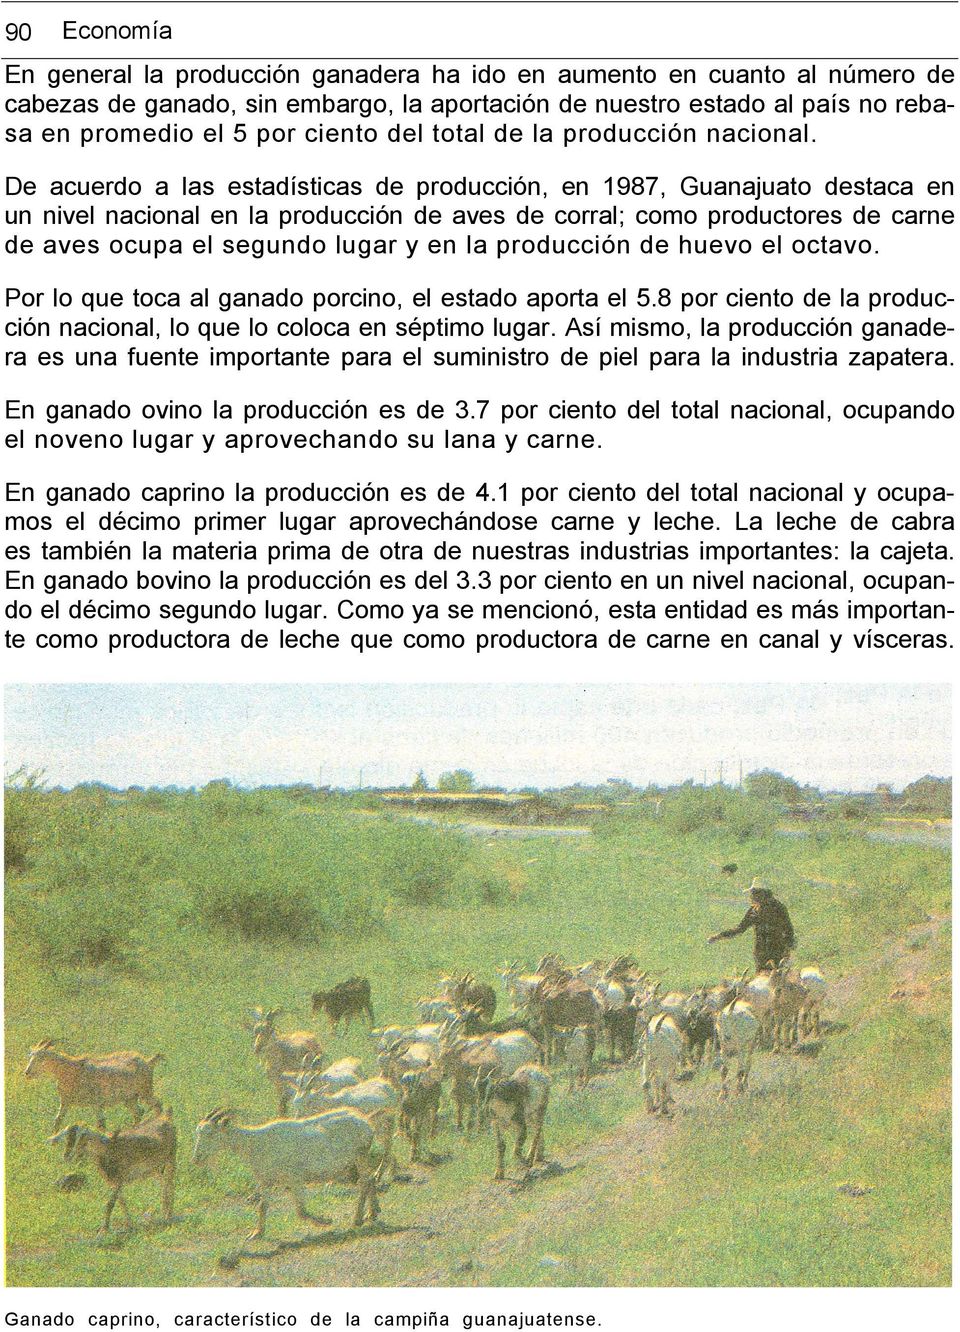 De acuerdo a las estadísticas de producción, en 1987, Guanajuato destaca en un nivel nacional en la producción de aves de corral; como productores de carne de aves ocupa el segundo lugar y en la